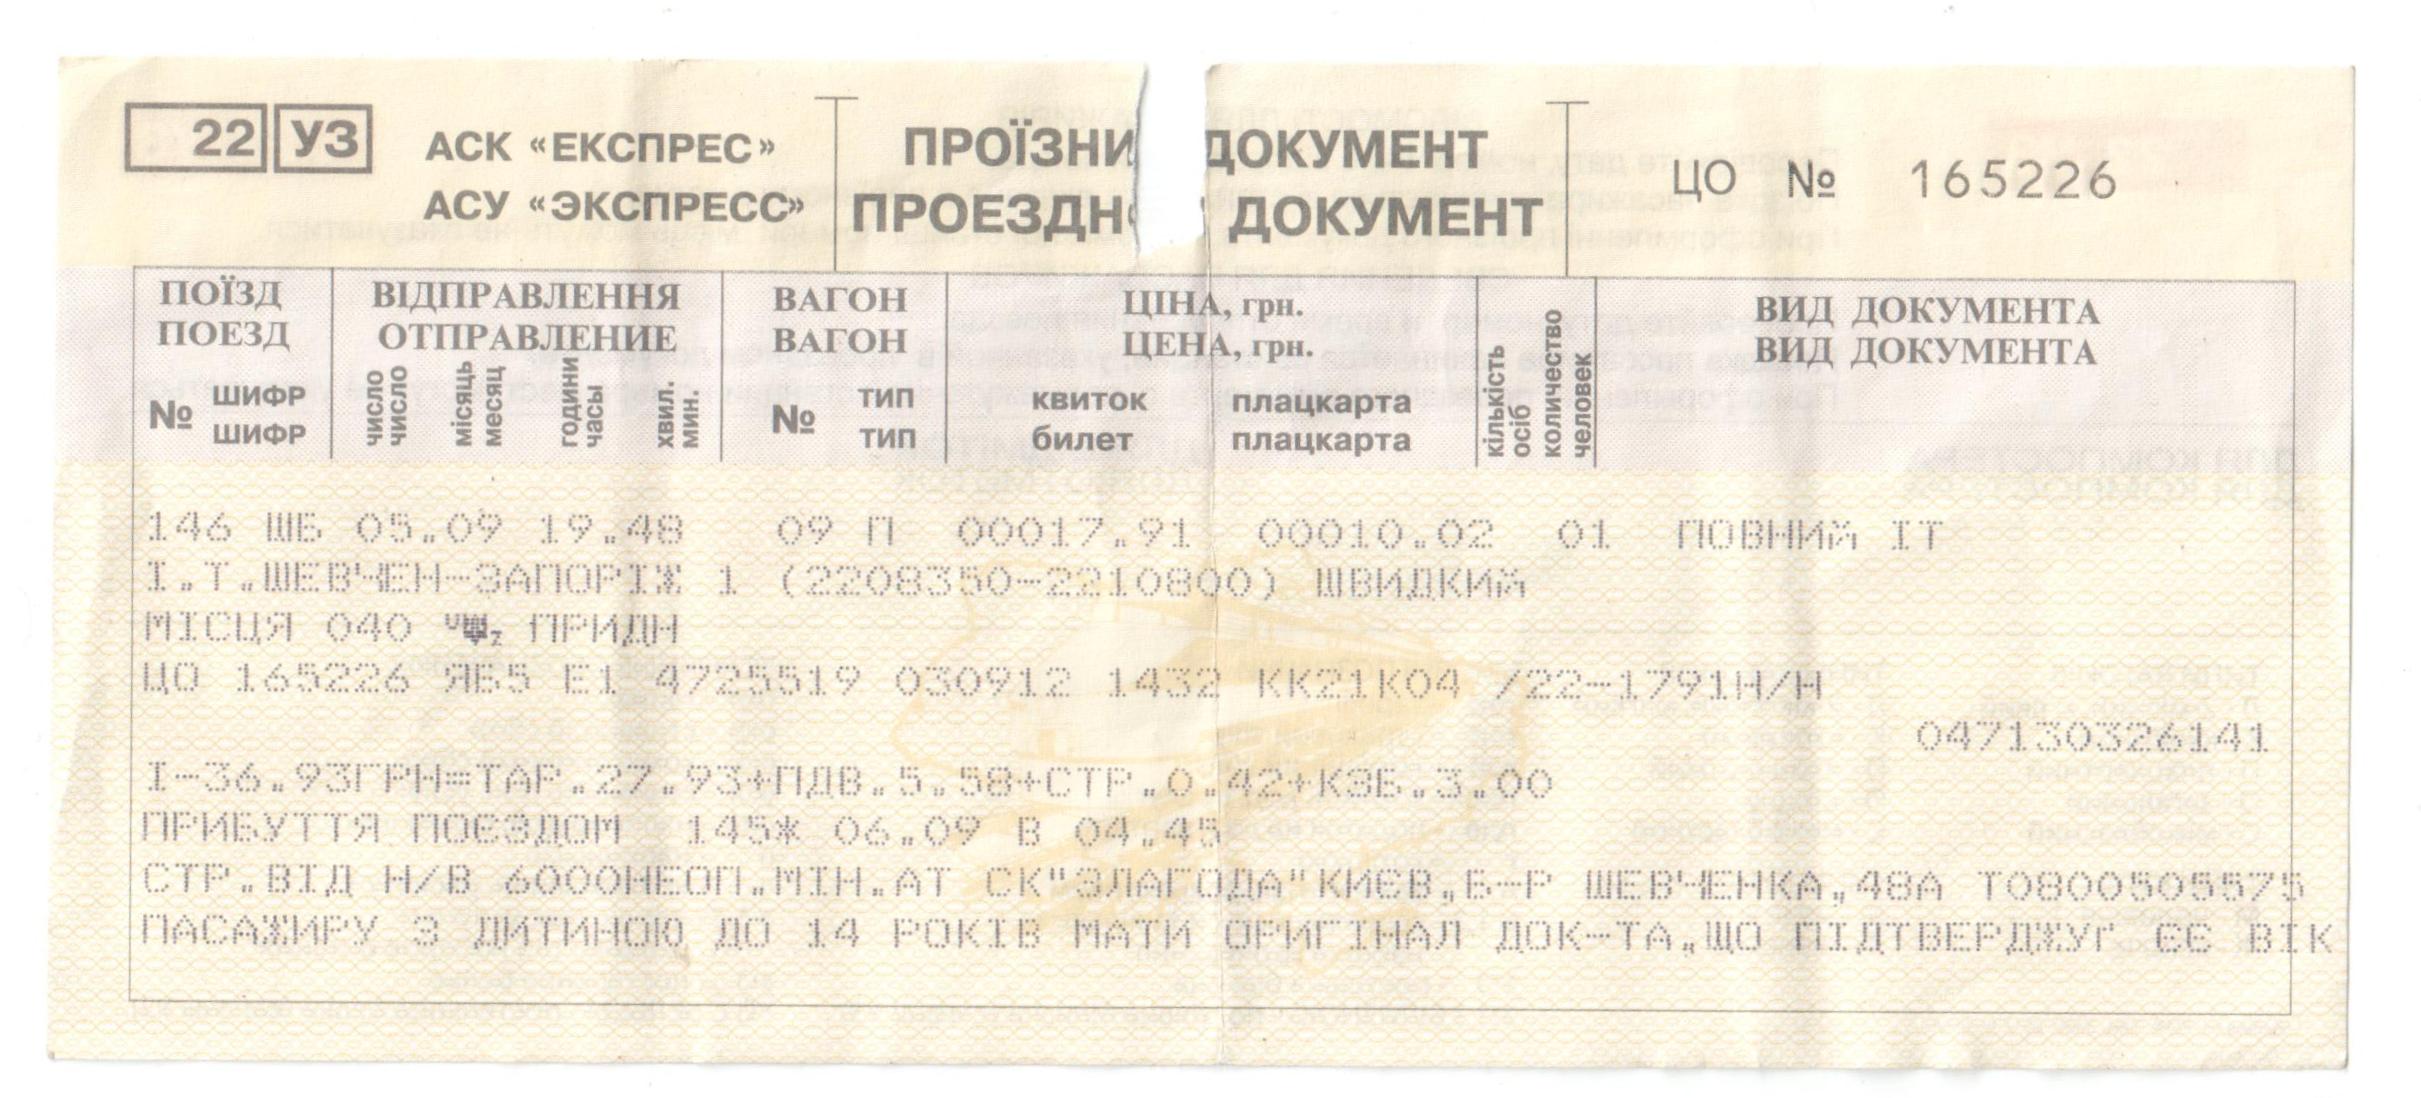 Купить билет на поезд семь колодезей. Билет на поезд. Купейный билет на поезд. Железнодорожный билет СССР. Старинный билет на поезд.